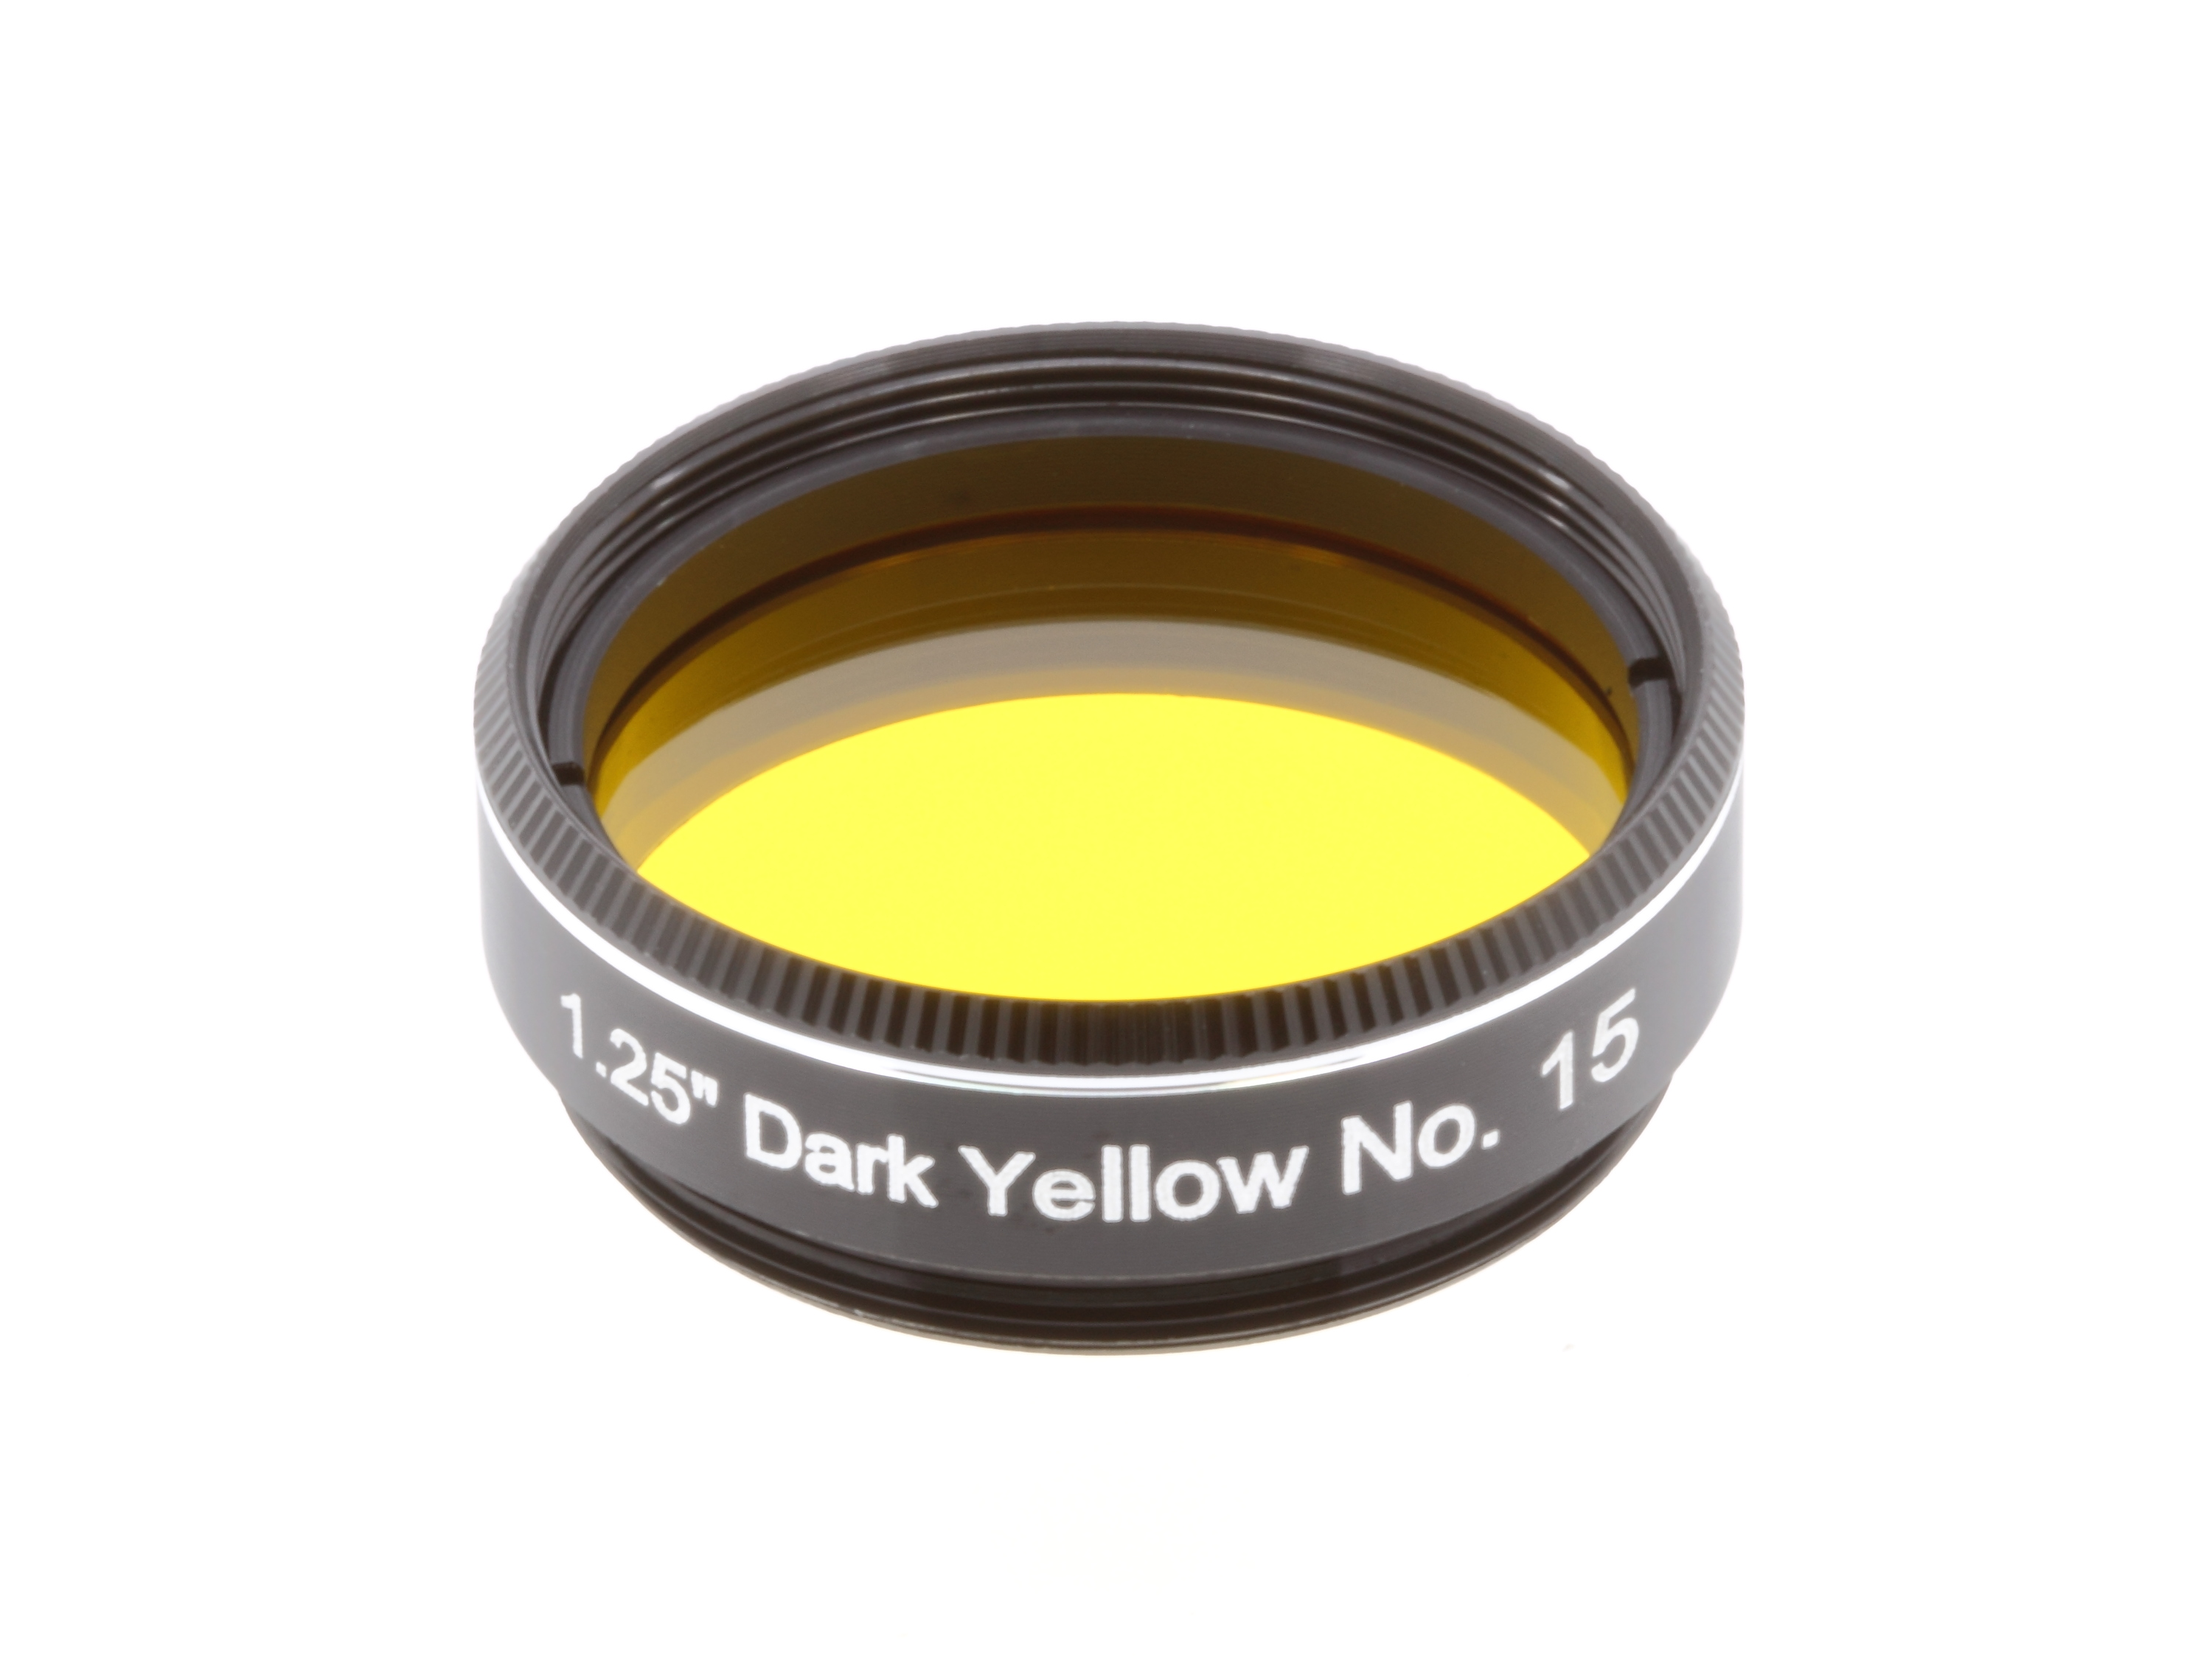 EXPLORE SCIENTIFIC Filtro 1.25" amarillo oscuro nr. 15